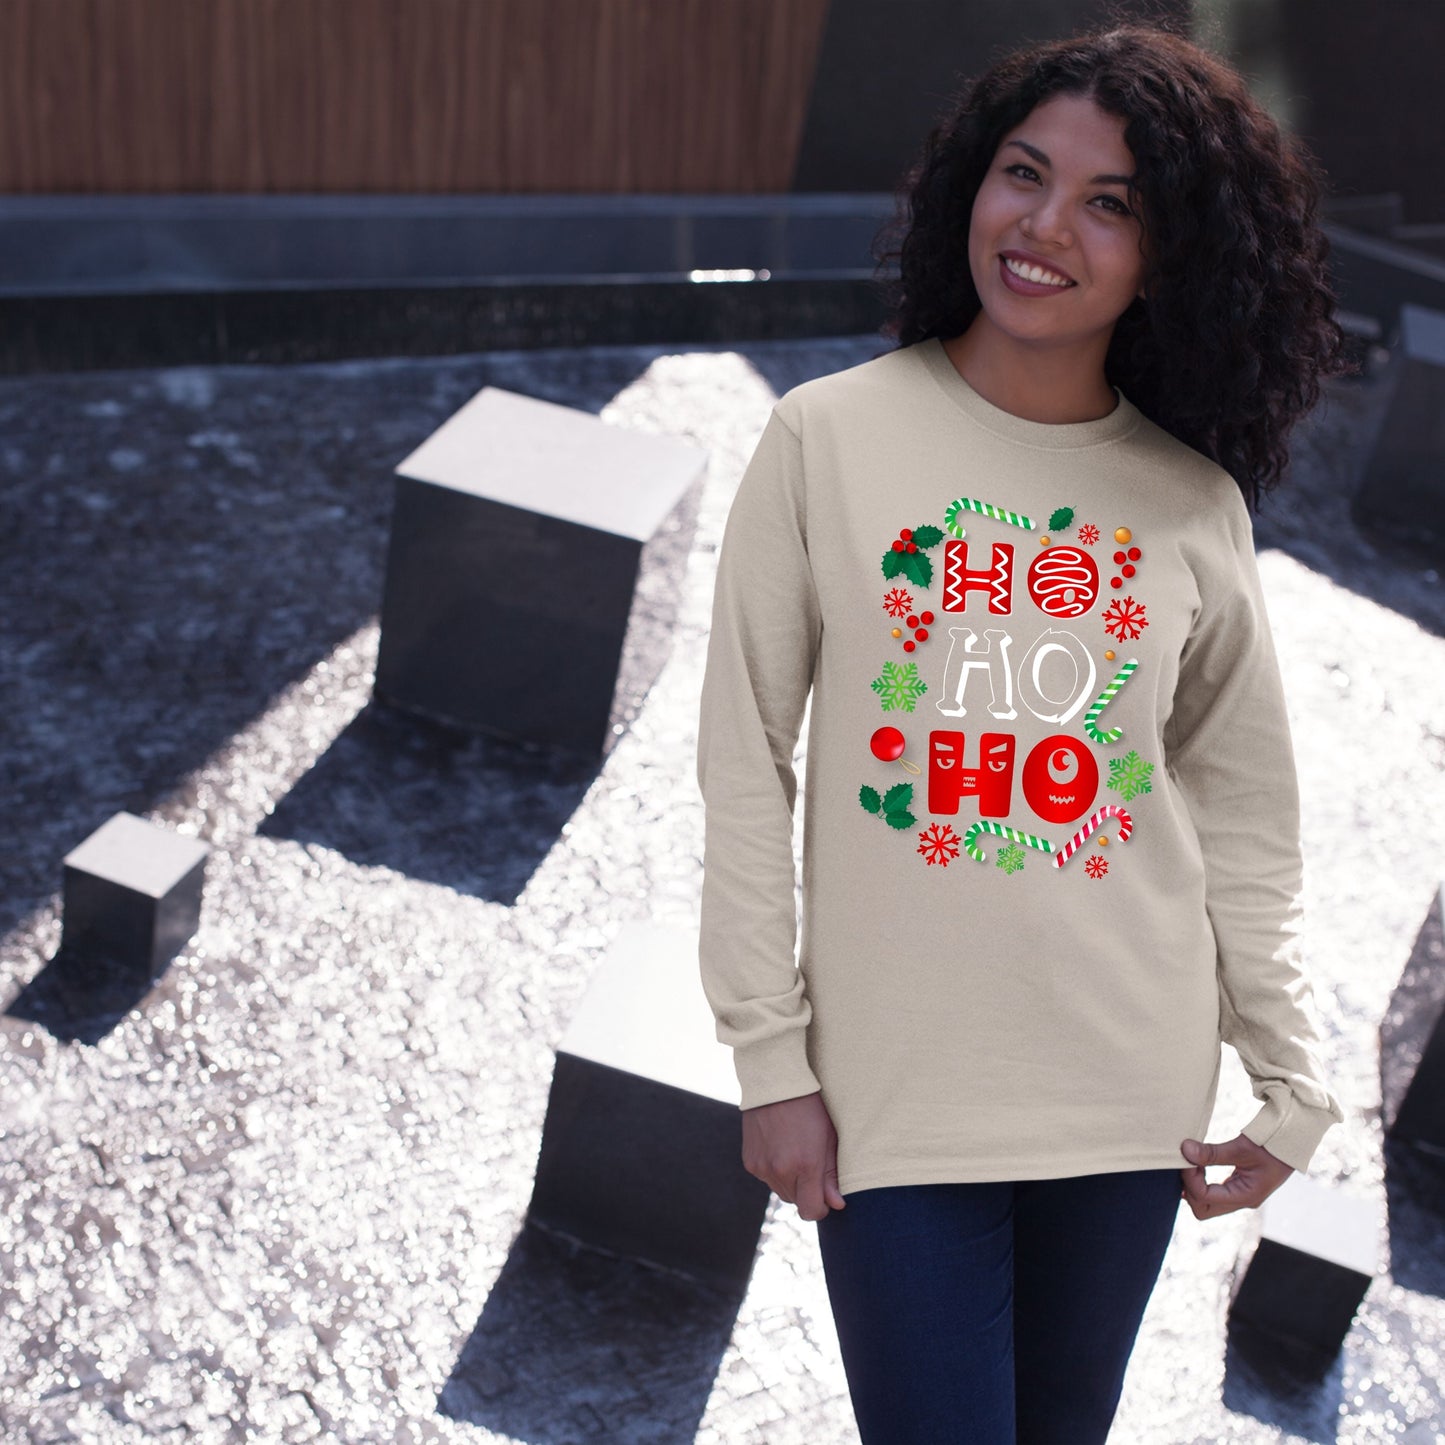 Ho Ho Ho, Christmas Long Sleeves, Christmas Crewneck For Women, Christmas Present, Christmas Sweatshirt, Christmas Sweater